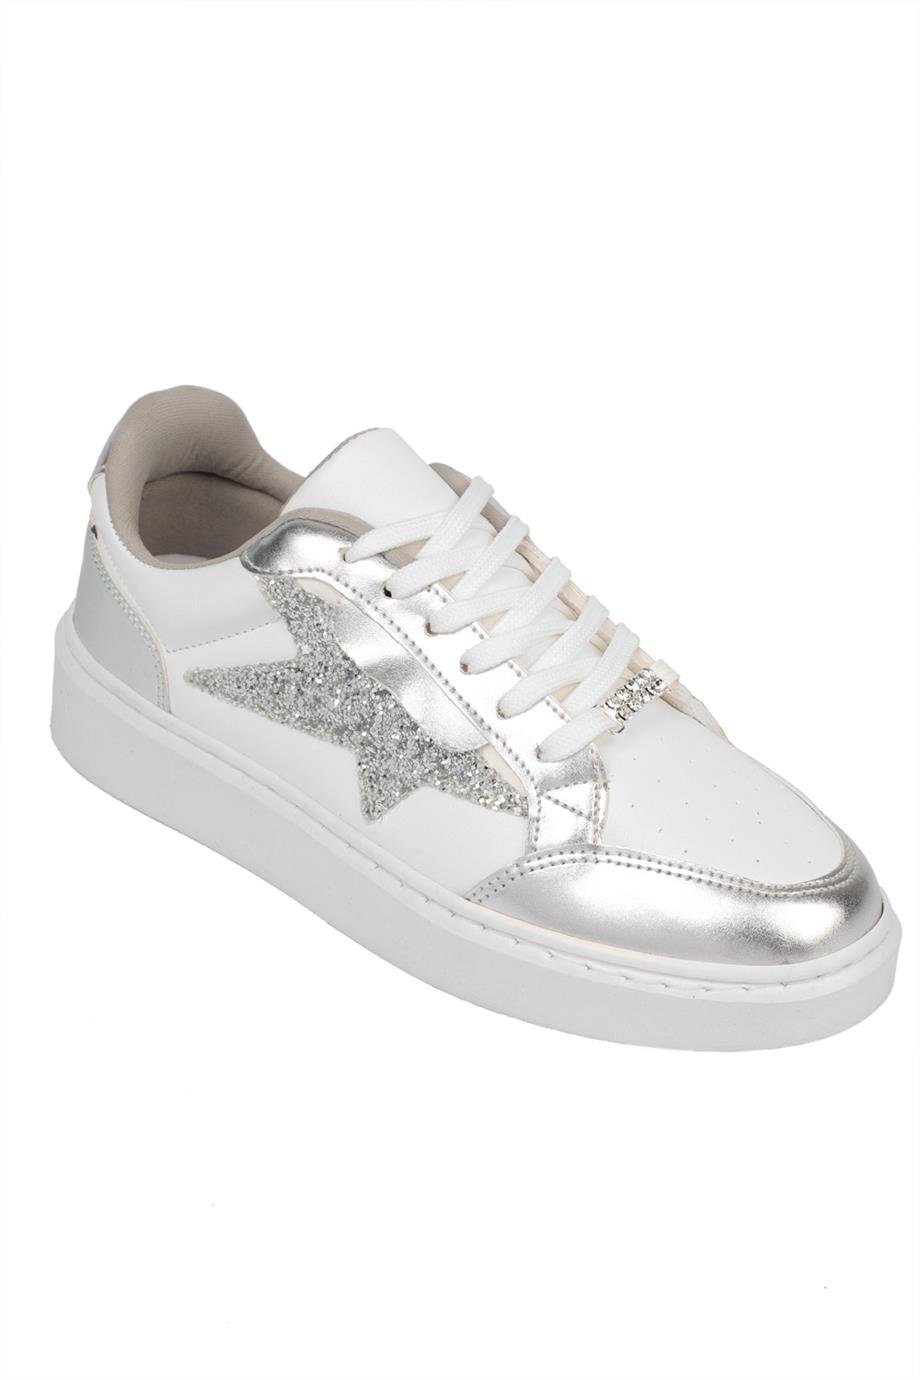 Capone Beyaz Gümüş Yıldızlı Kadın Sneaker Spor Ayakkabı | Caponestore